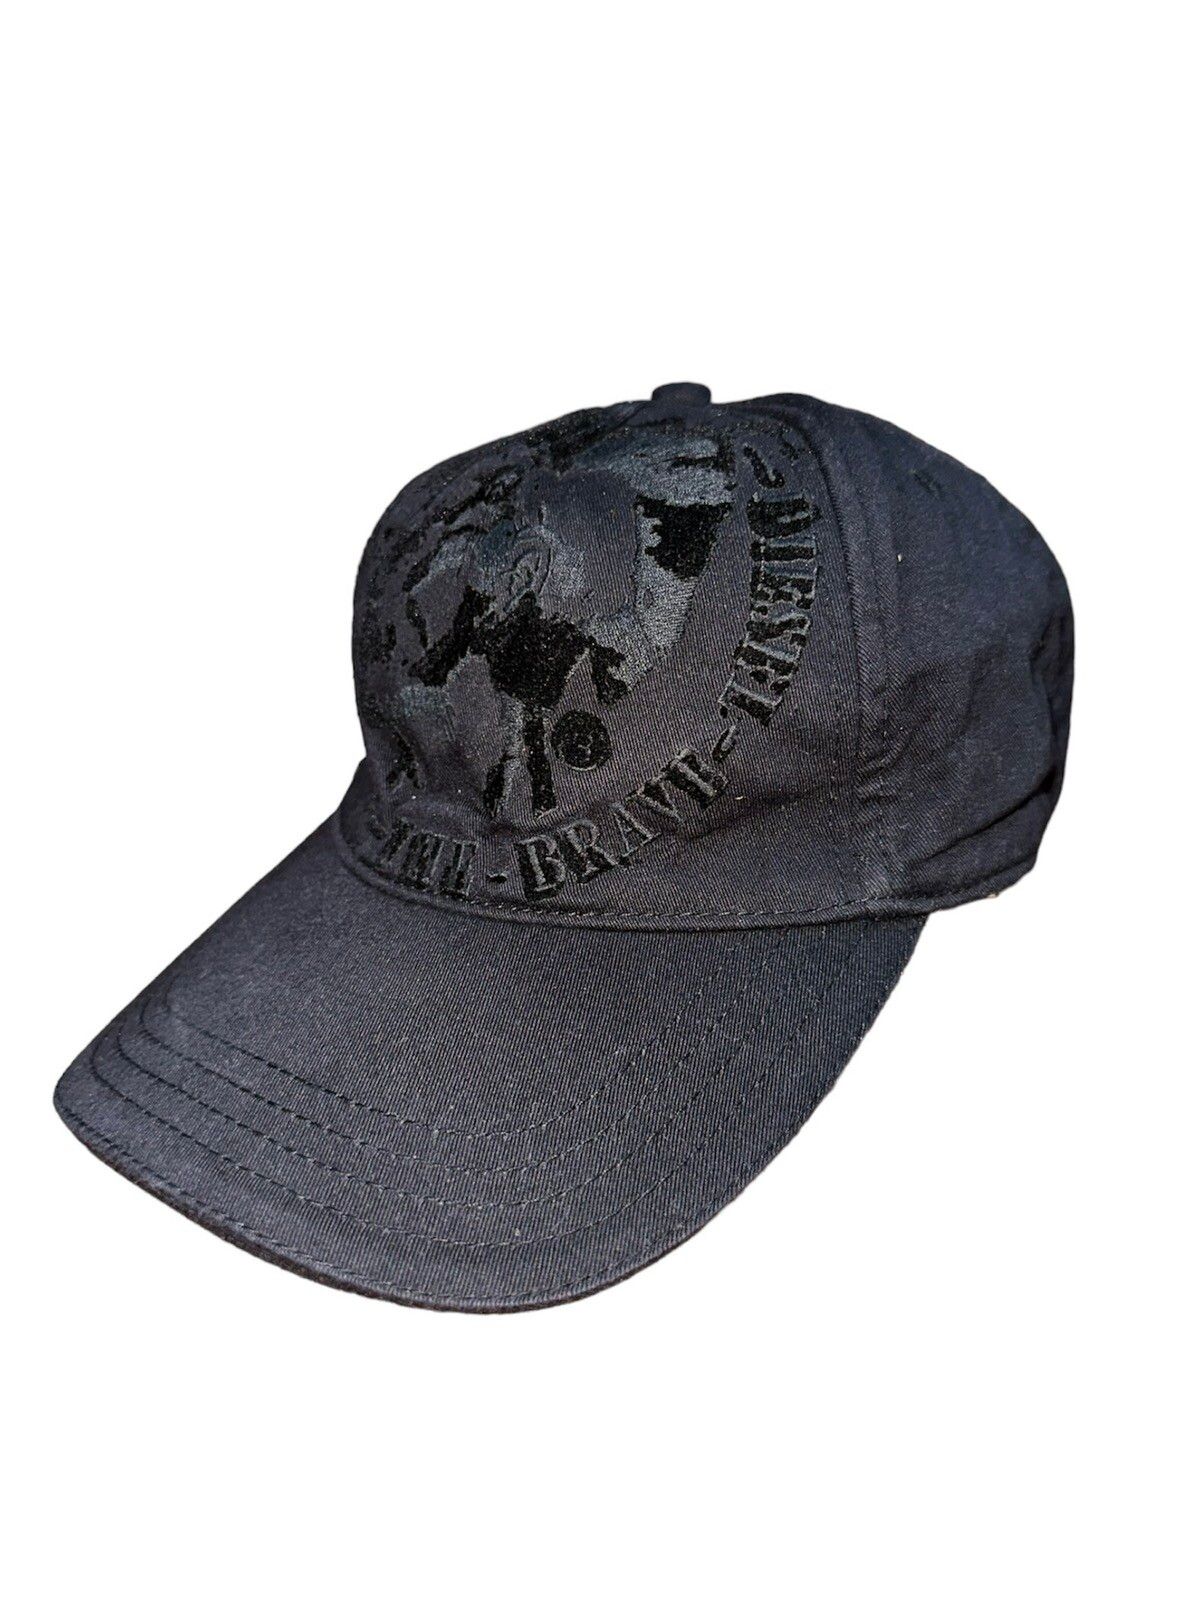 Diesel Black Velvet Hat - 1